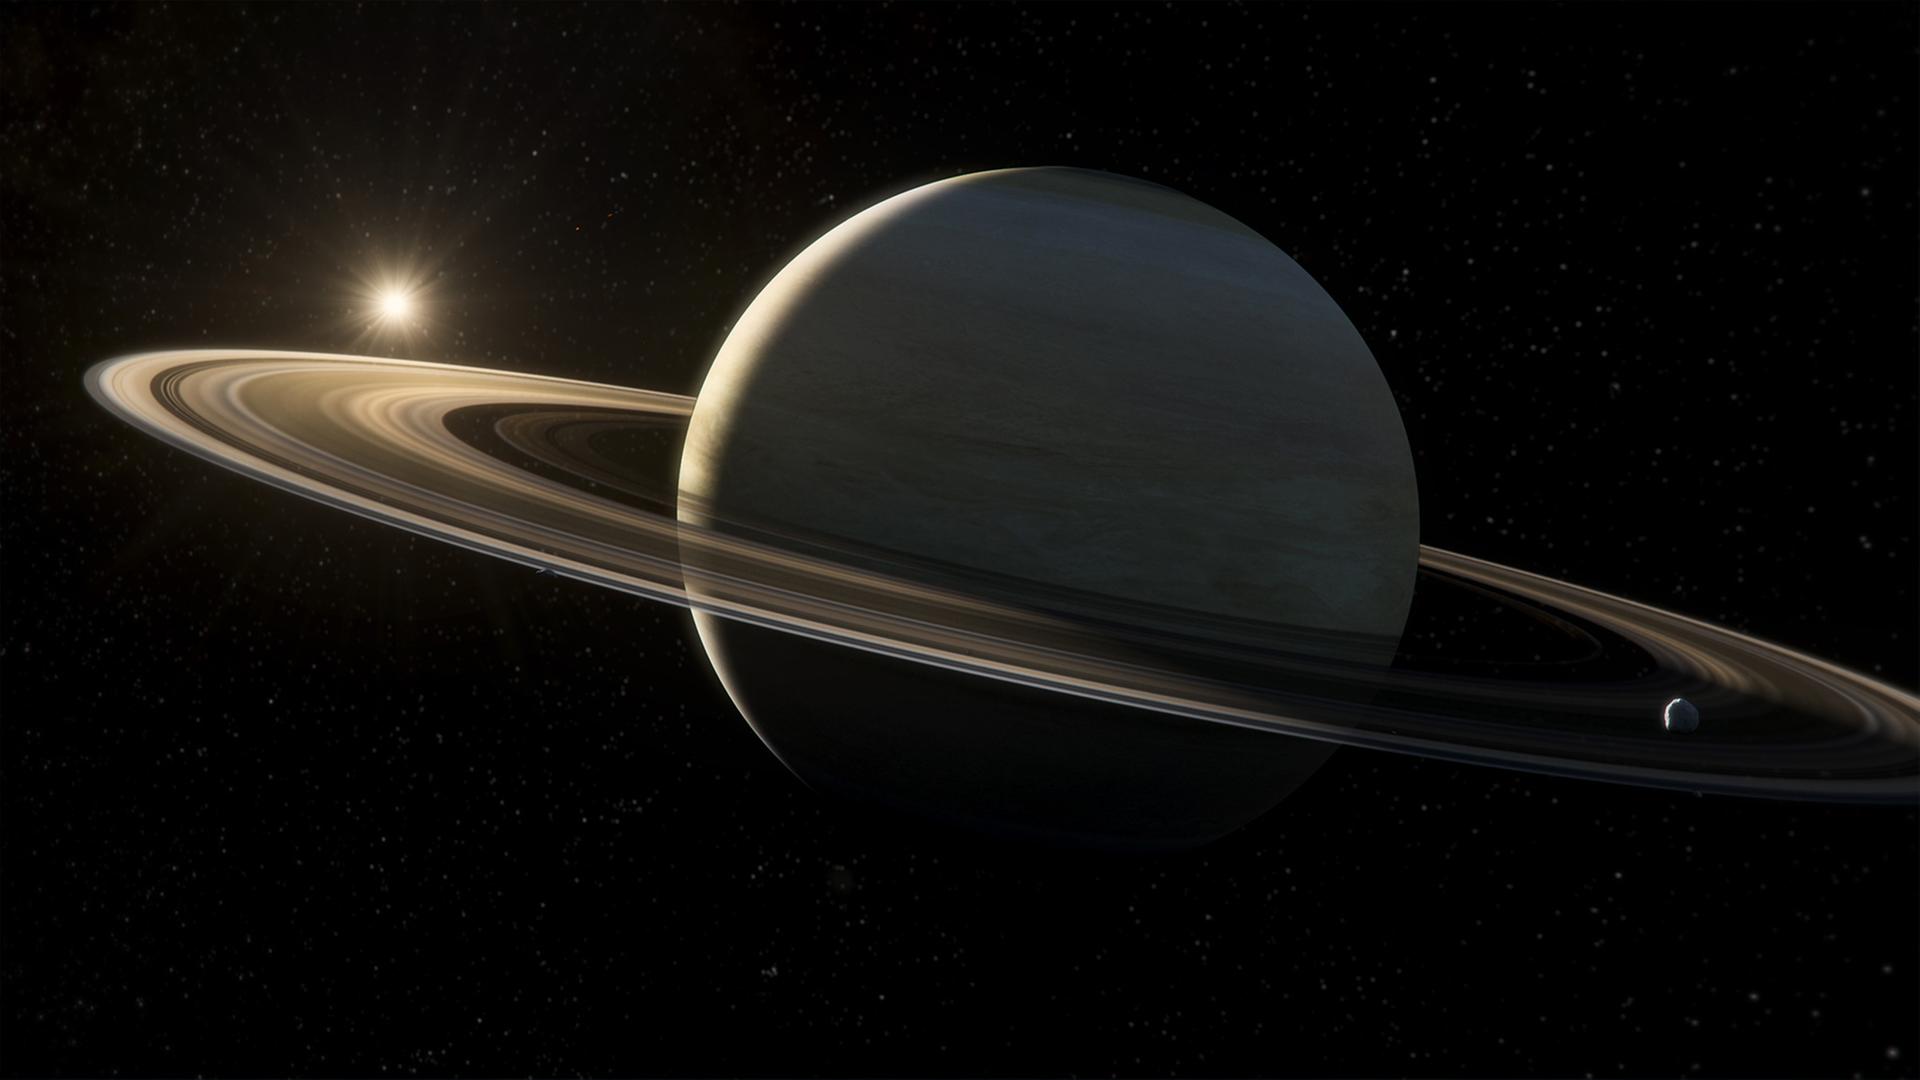 "Das Universum - Eine Reise durch Raum und Zeit: Der Saturn": Saturn auf Schwarz.